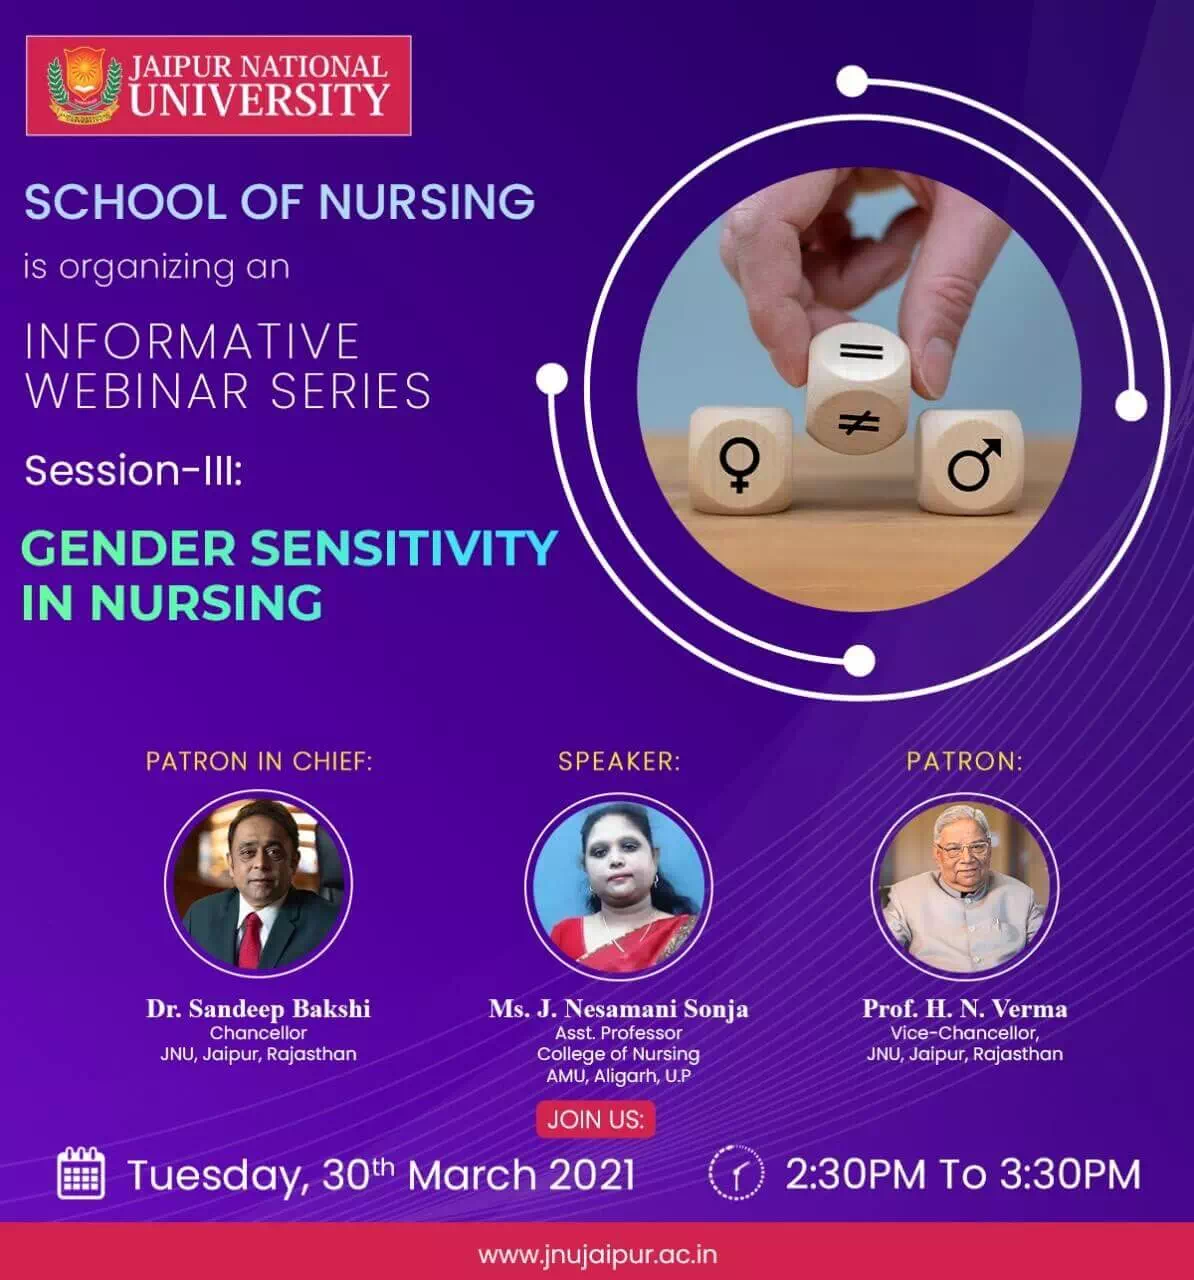  Webinar on “Gender Sensitivity in Nursing”